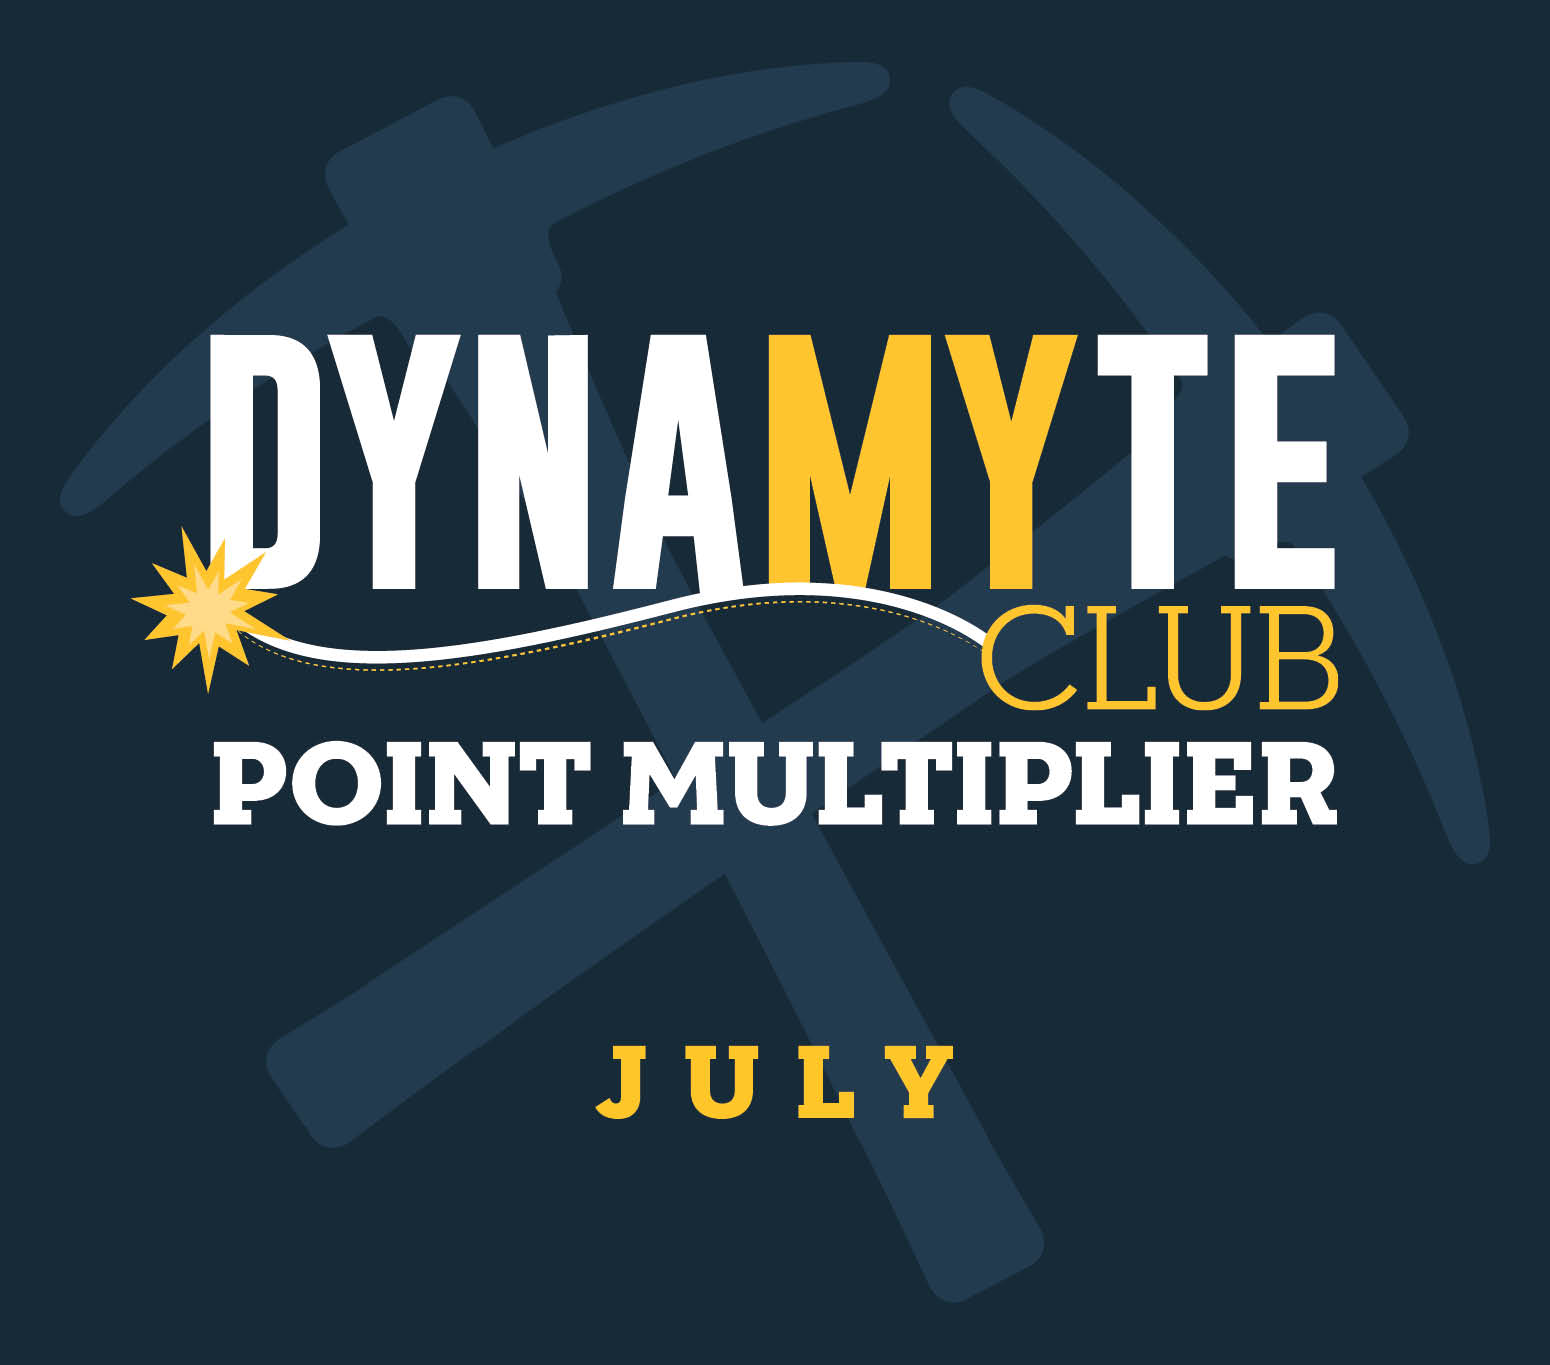 DynaMYte Club Point Multiplier July